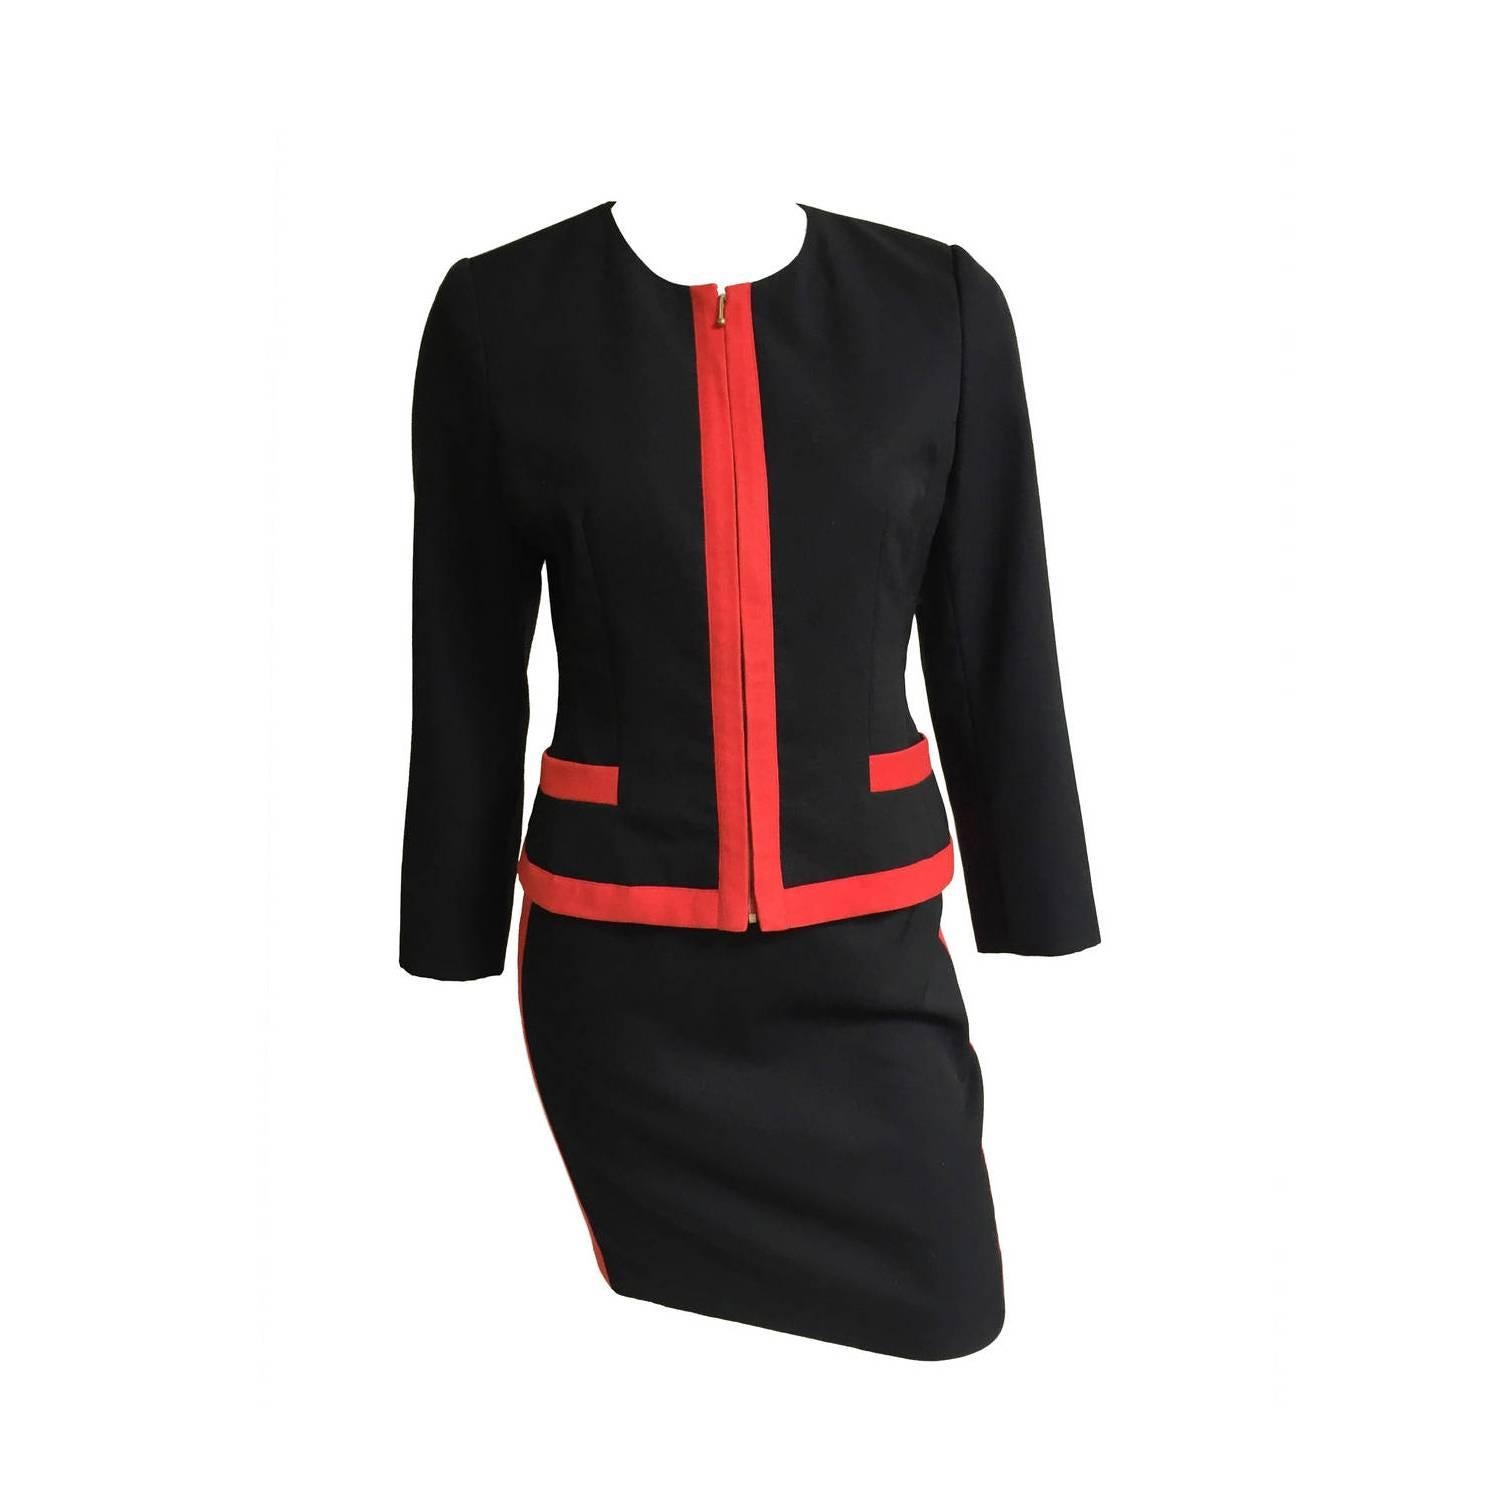 Lolita Lempicka Paris Black Wool Skirt Suit Size 4. For Sale